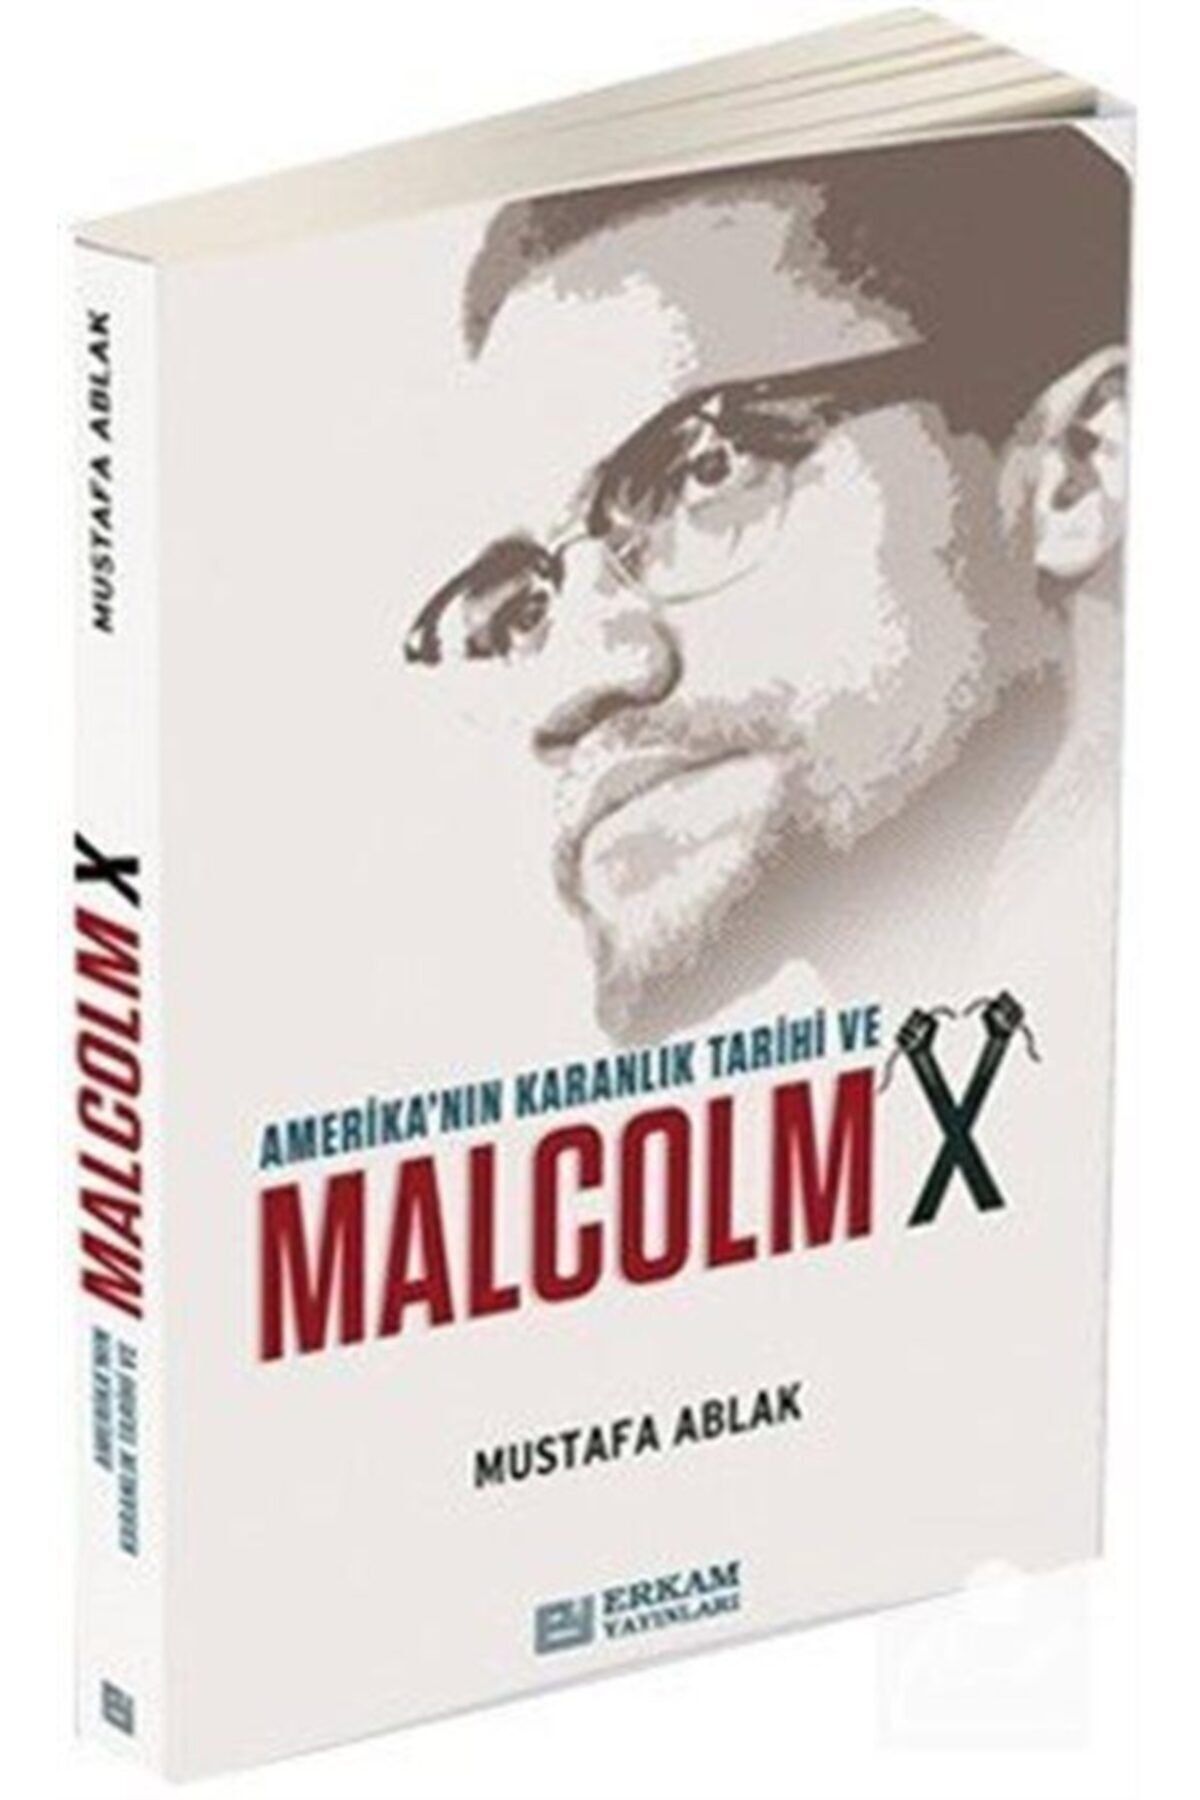 Erkam Yayınları Amerika'nın Karanlık Tarihi Ve Malcolm X - Mustafa Ablak